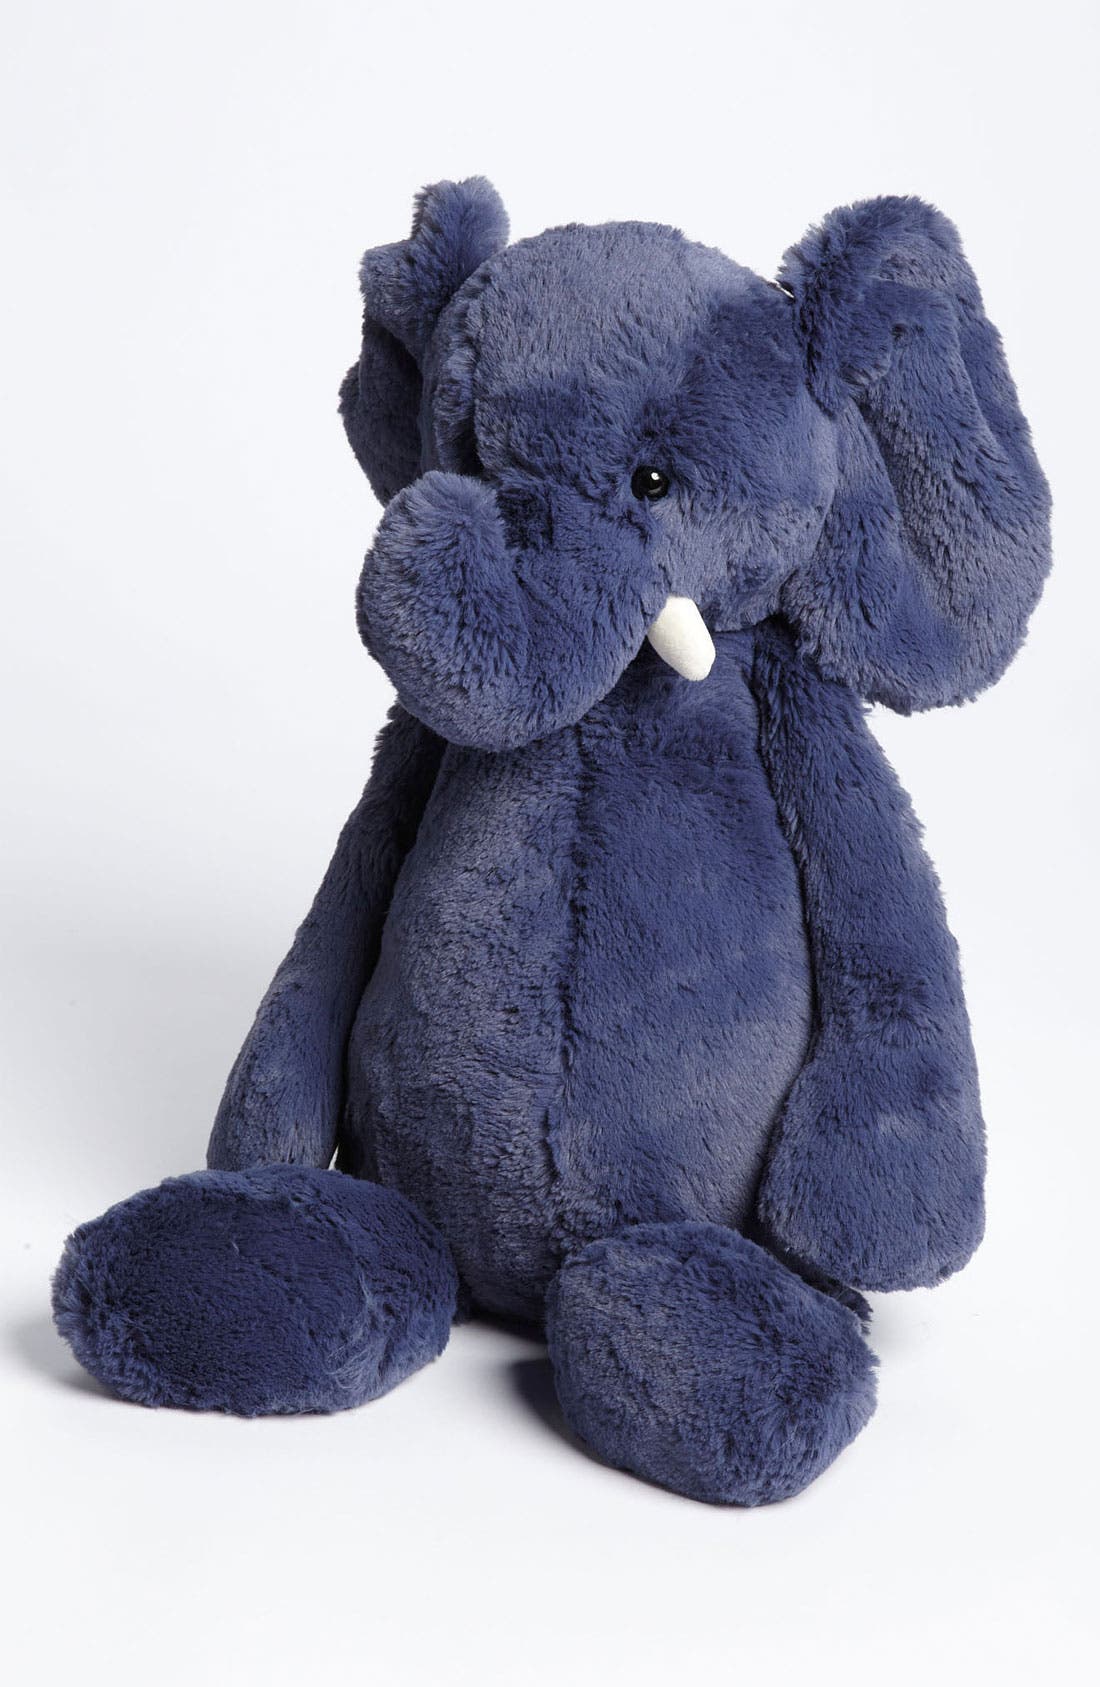 blue elephant plush